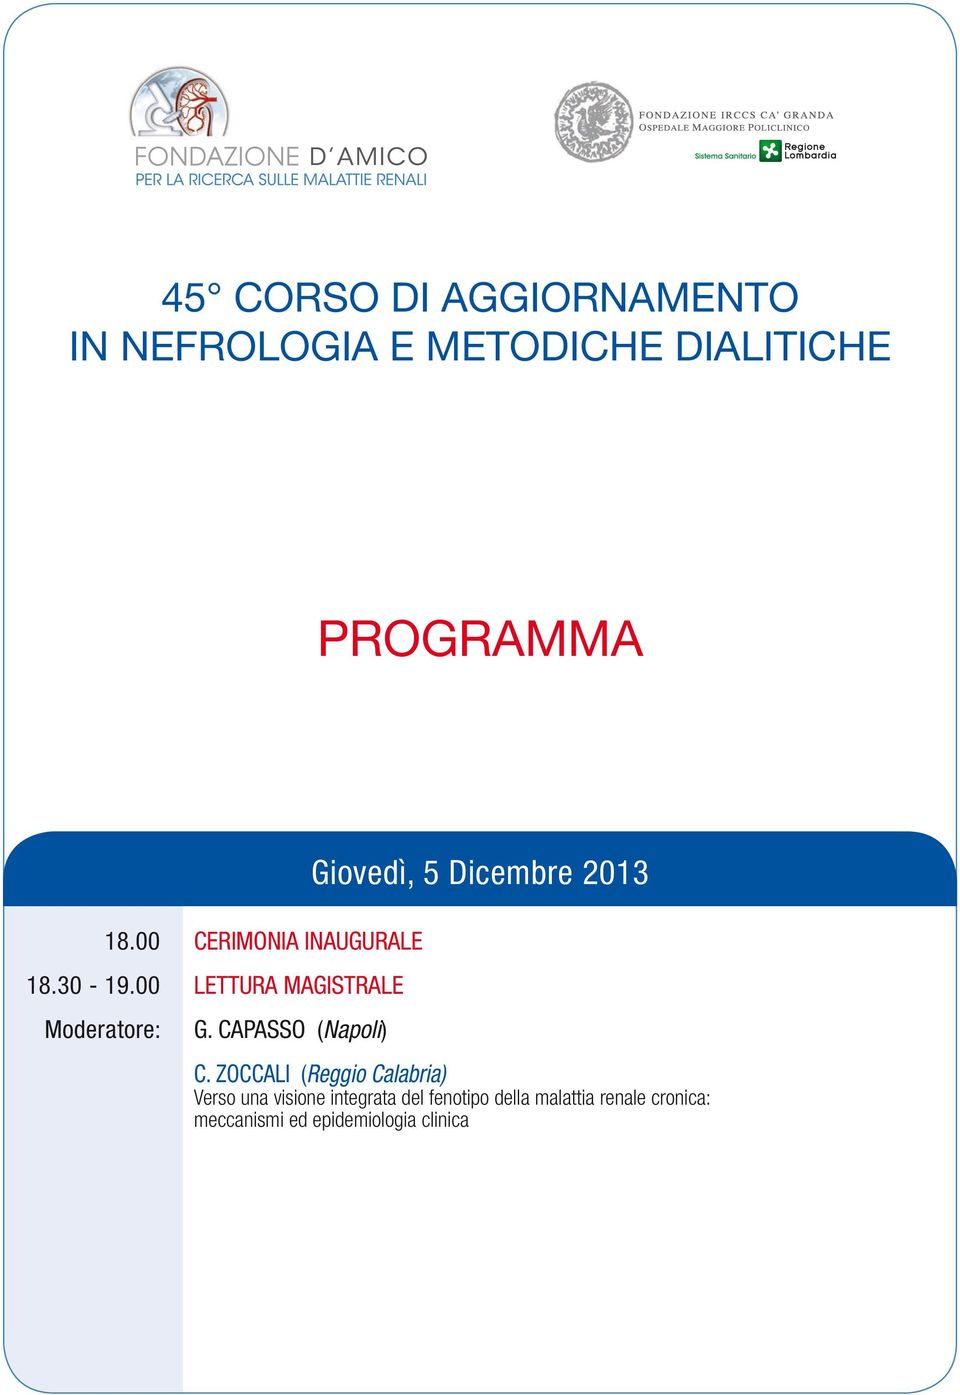 00 Moderatore: CERIMONIA INAUGURALE LETTURA MAGISTRALE G. CAPASSO (Napoli) C.